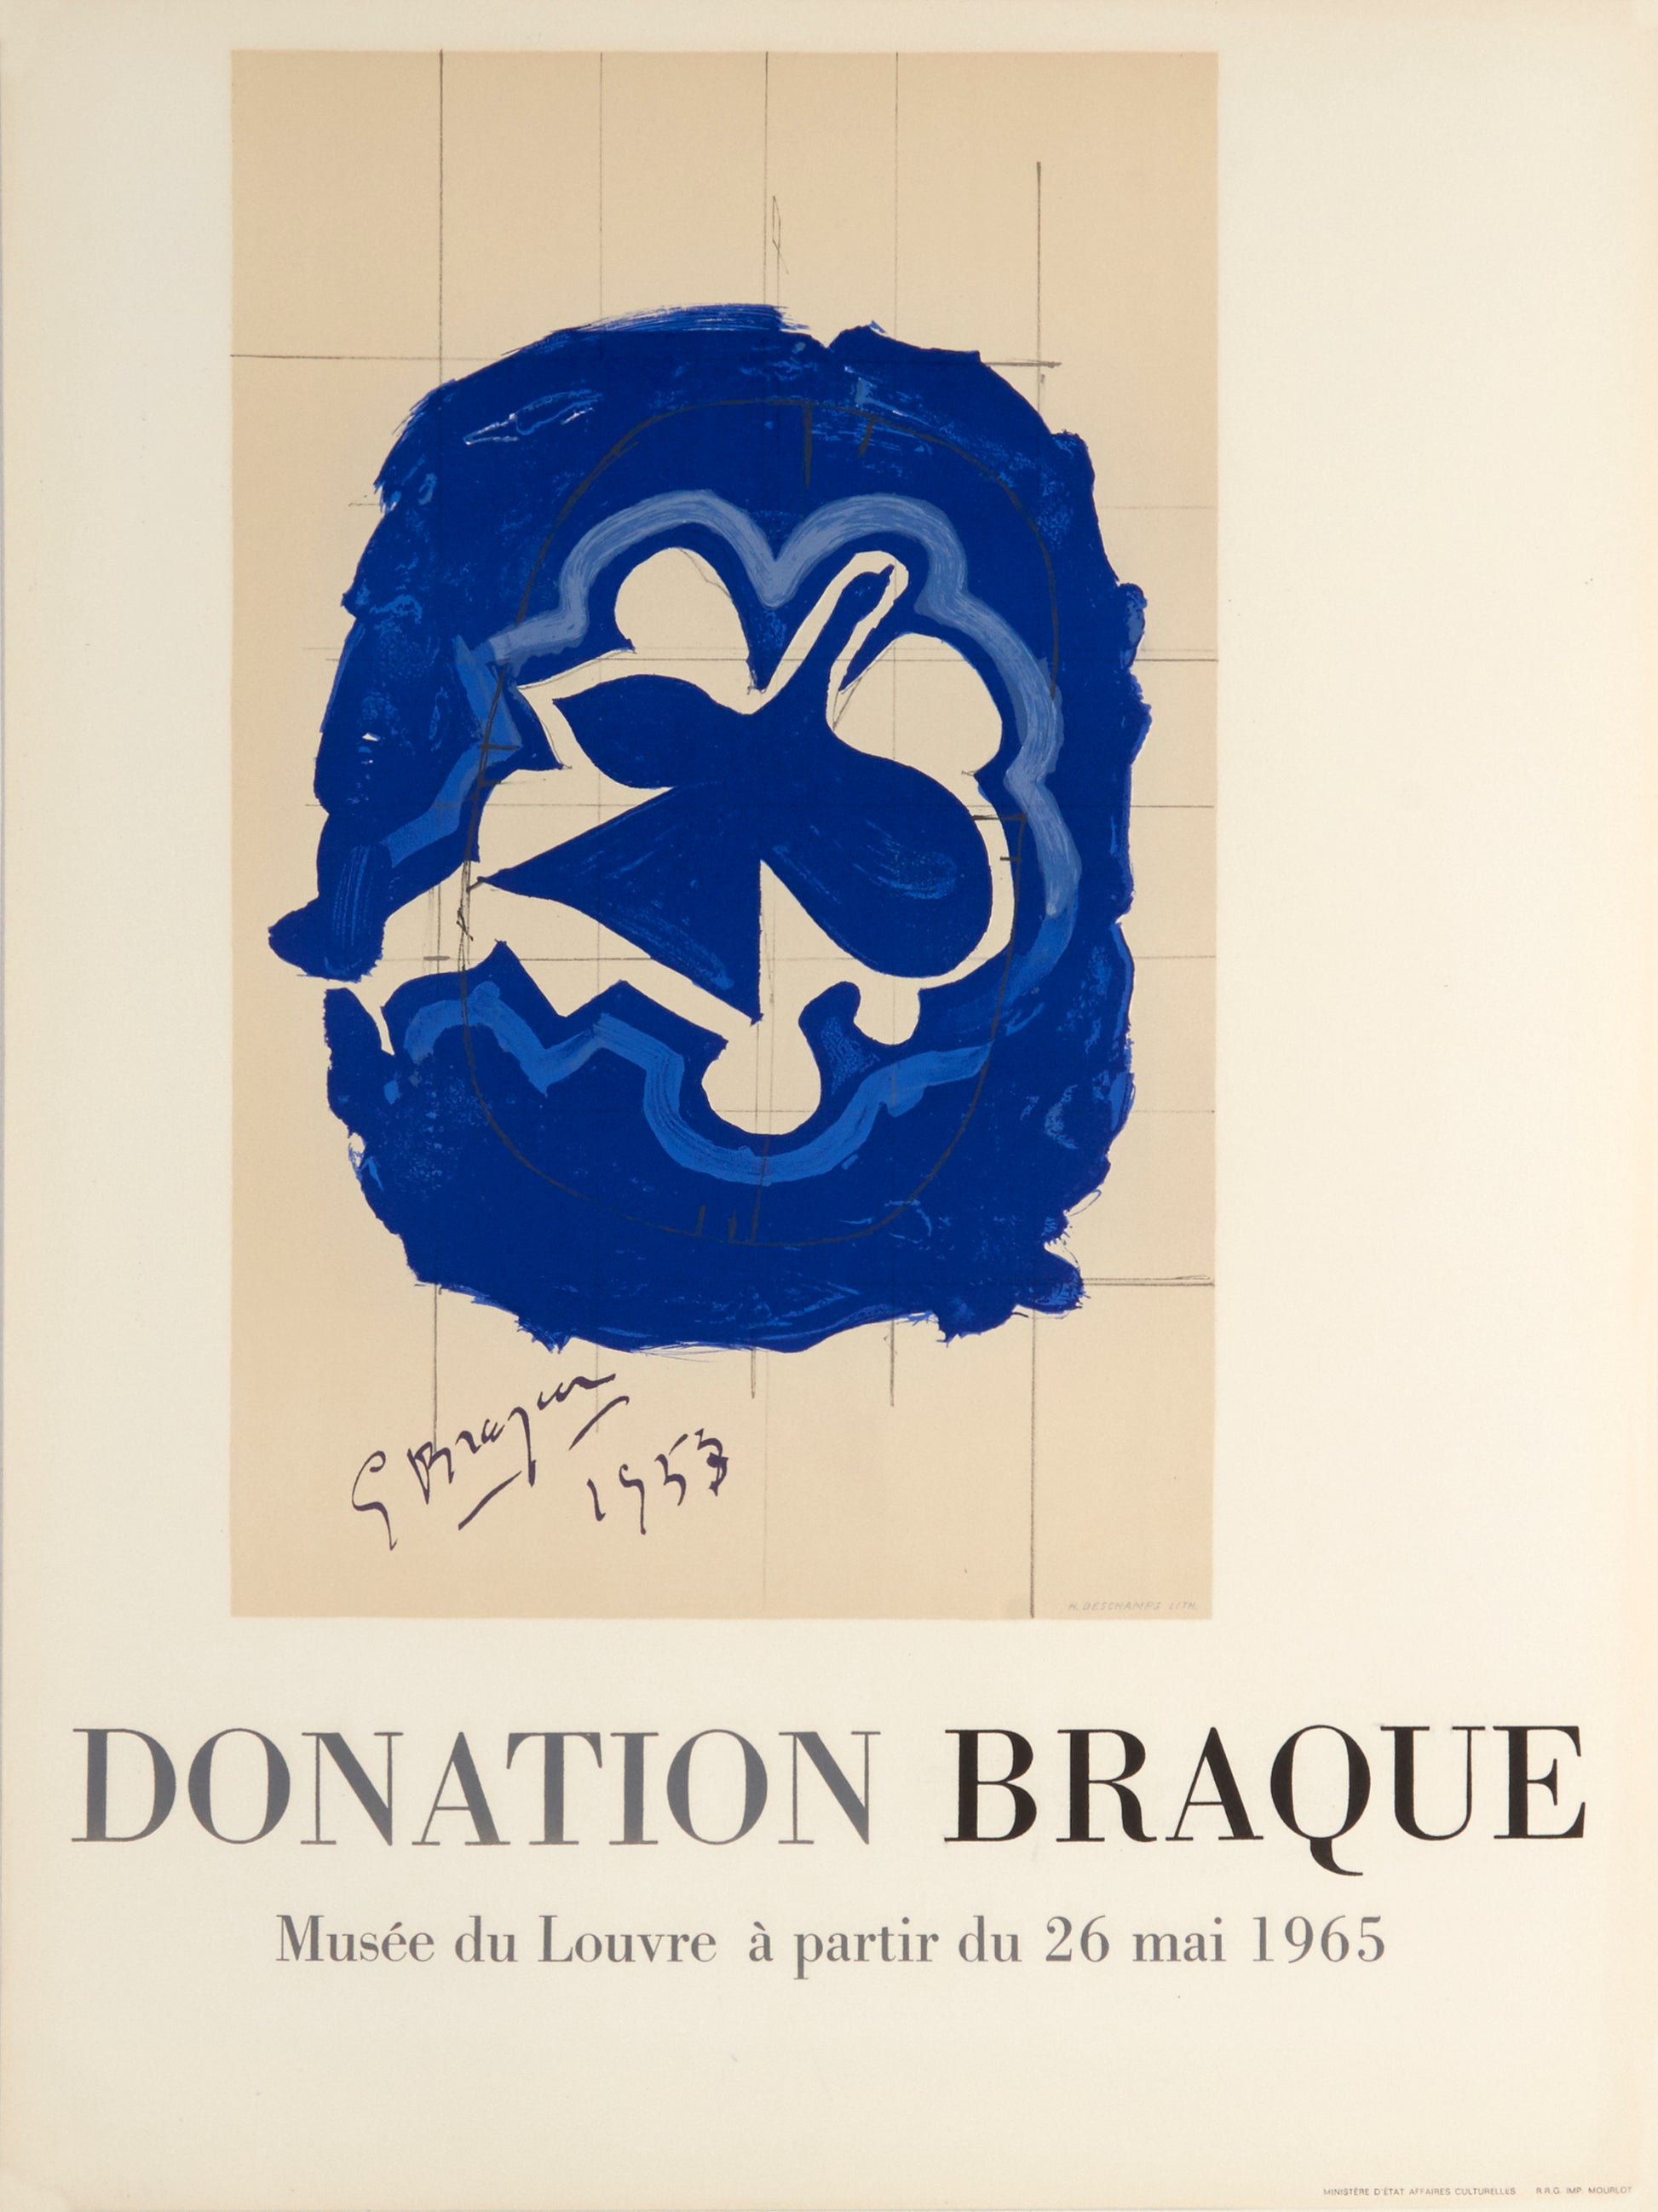 Donation Braque - Le Louvre (After) Georges Braque, 1965 - Mourlot Editions - Fine_Art - Poster - Lithograph - Wall Art - Vintage - Prints - Original